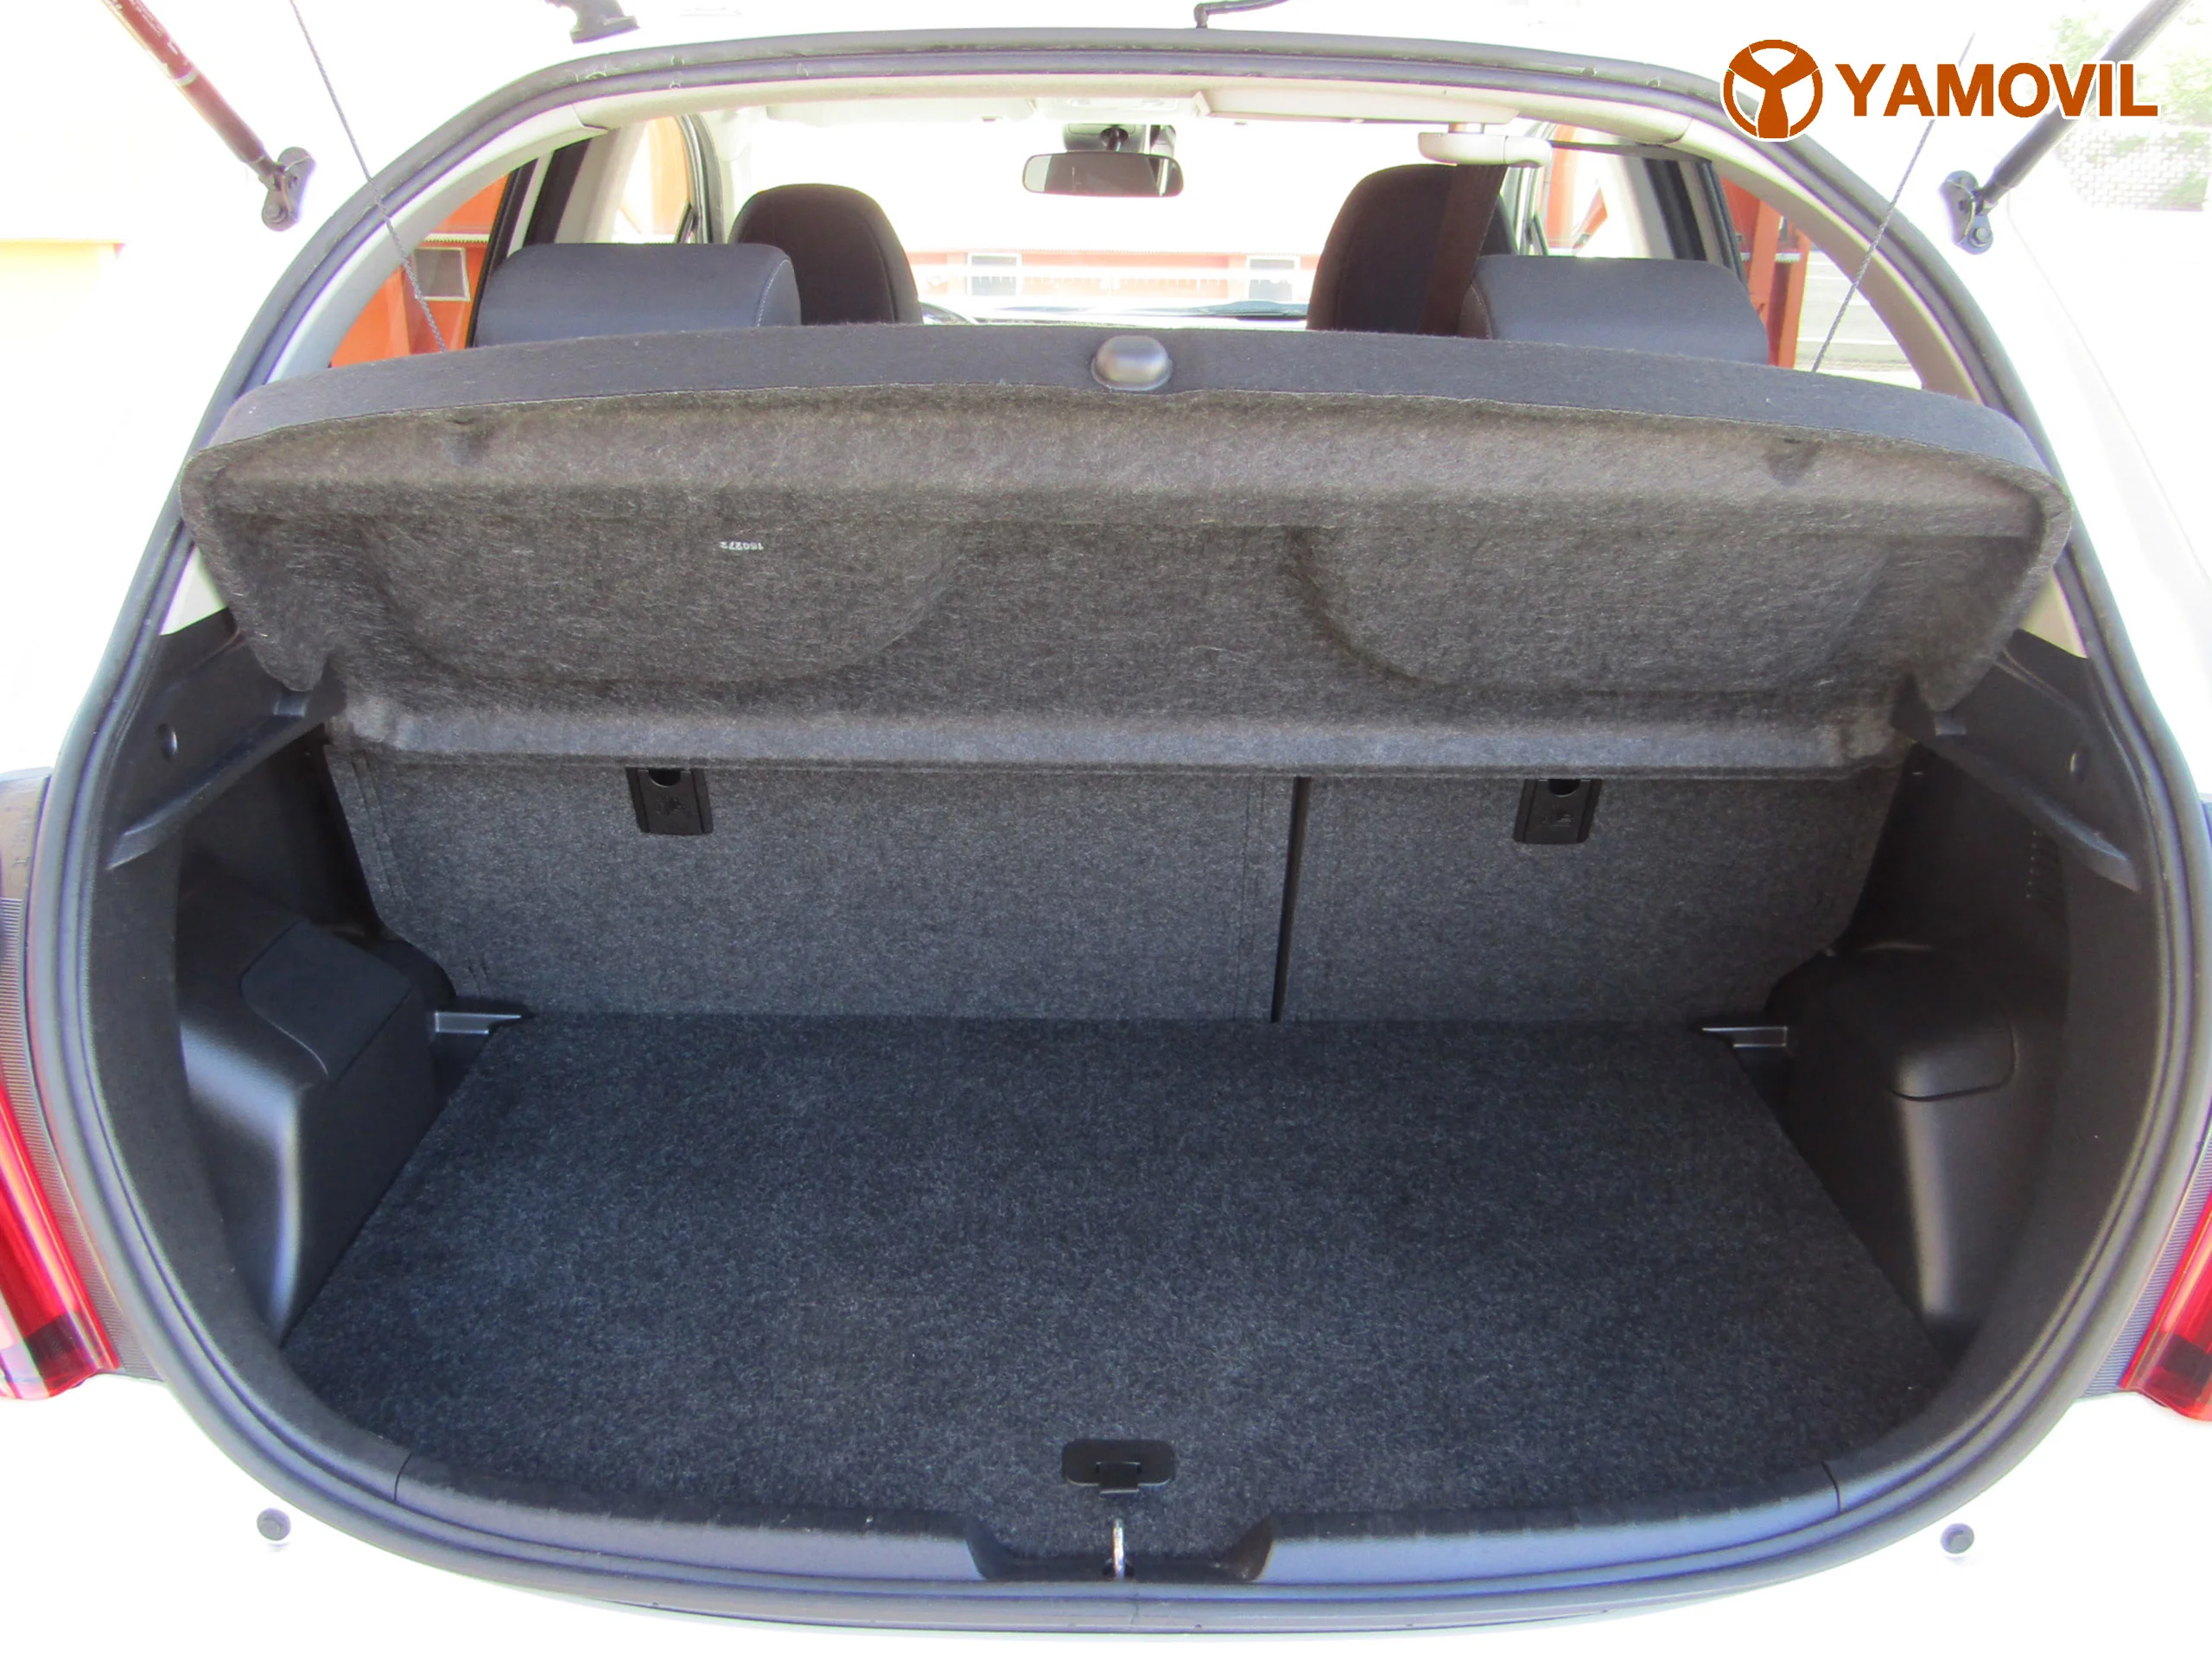 Toyota Yaris HYBRID FEEL 100CV - Foto 7